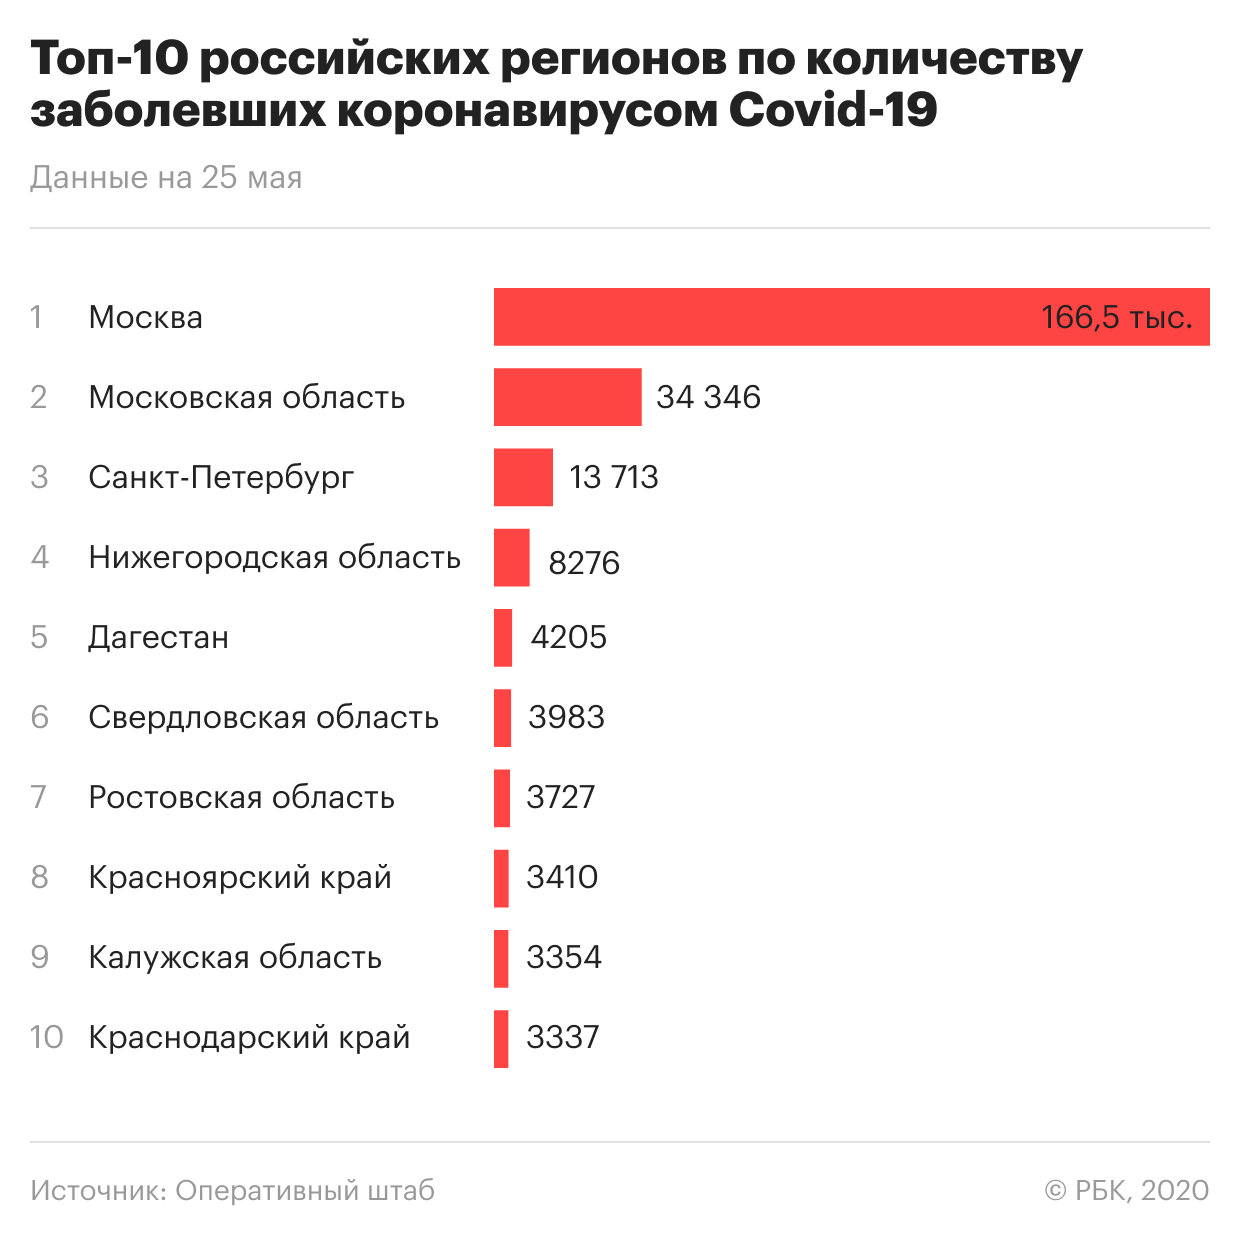 Сколько заболевших в России. Сколько человек заболело коронавиру. Количество заболевших. Статистика пандемии в России. Сколько сегодня заболело за сутки